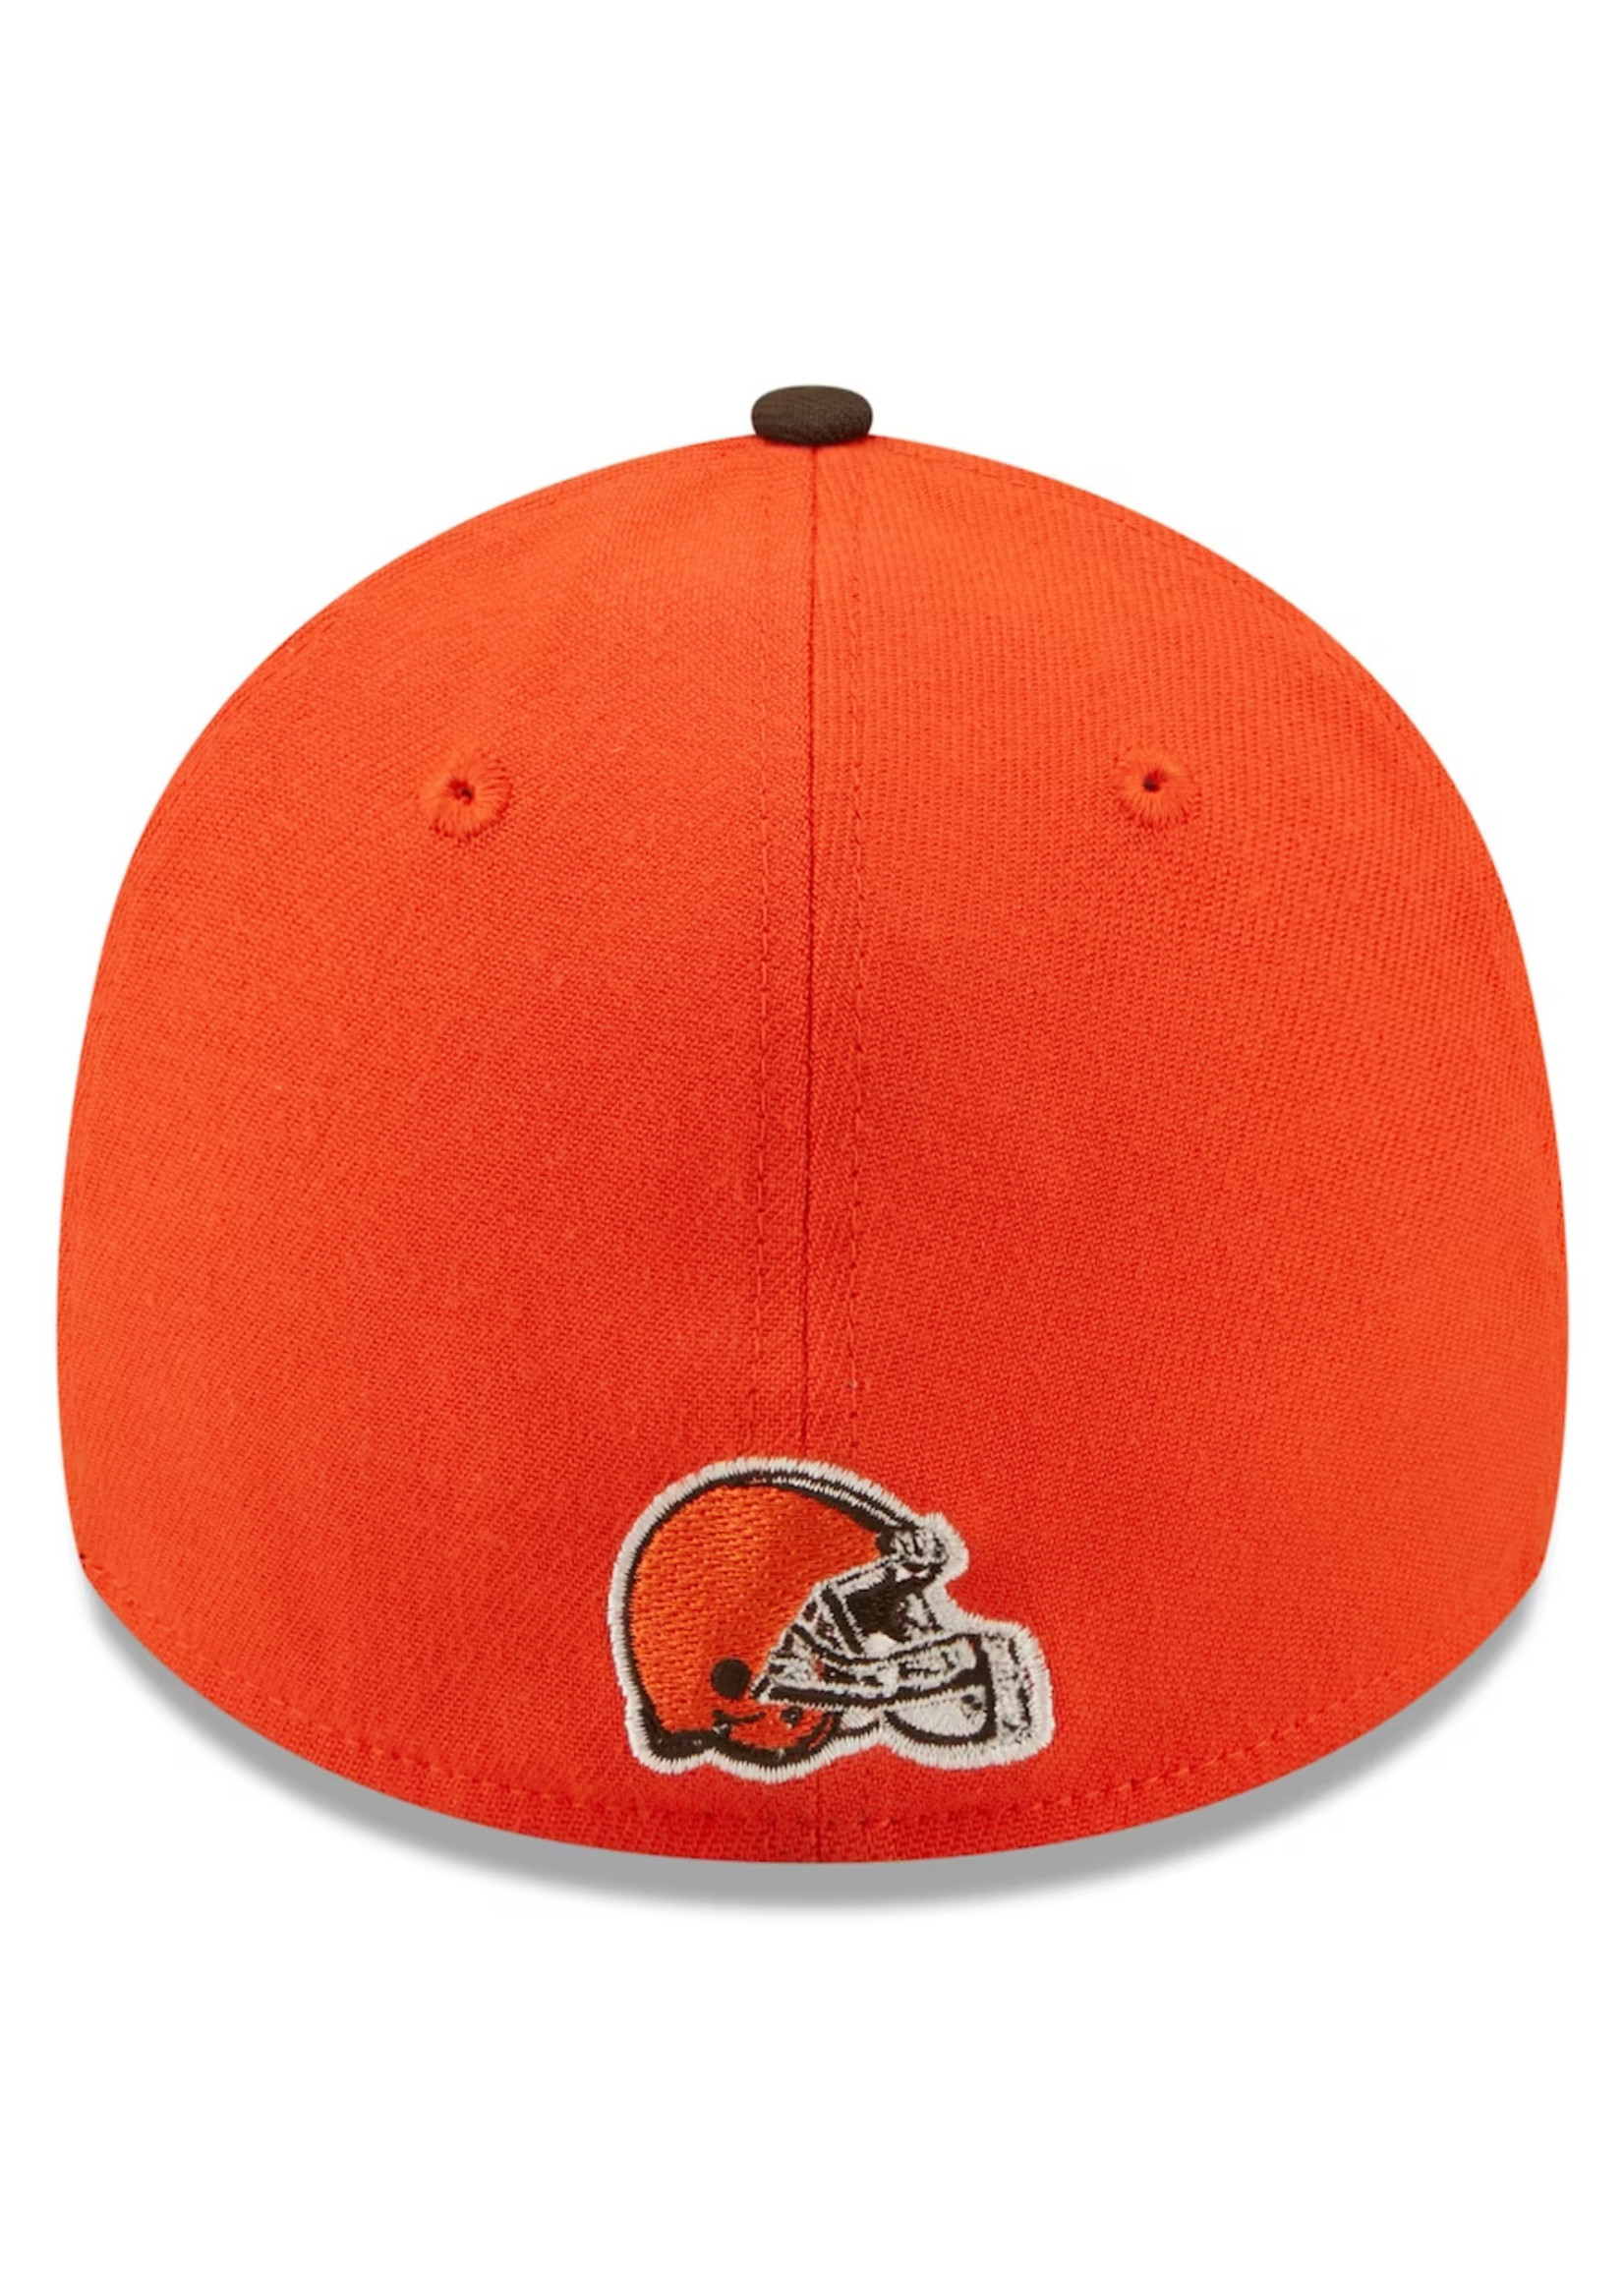 NEW ERA Cleveland Browns New Era Orange Sideline 39THIRTY Flex Hat